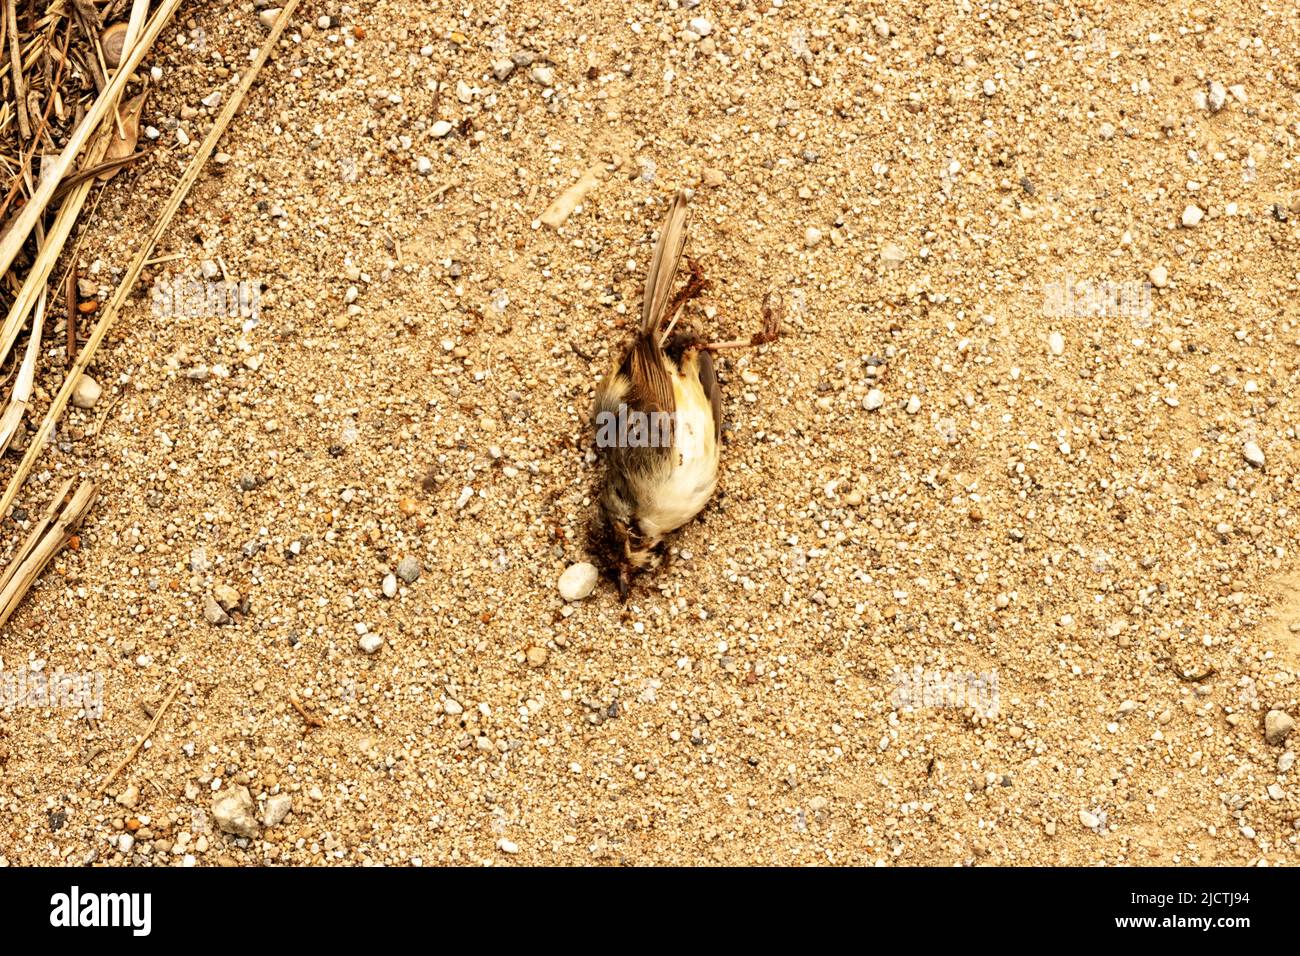 Kleiner Vogel starb, der von Ameisen gefressen wird. Saprophyten, die Leichen essern, reinigen die Umwelt von toten Tieren. Nordthailand Stockfoto